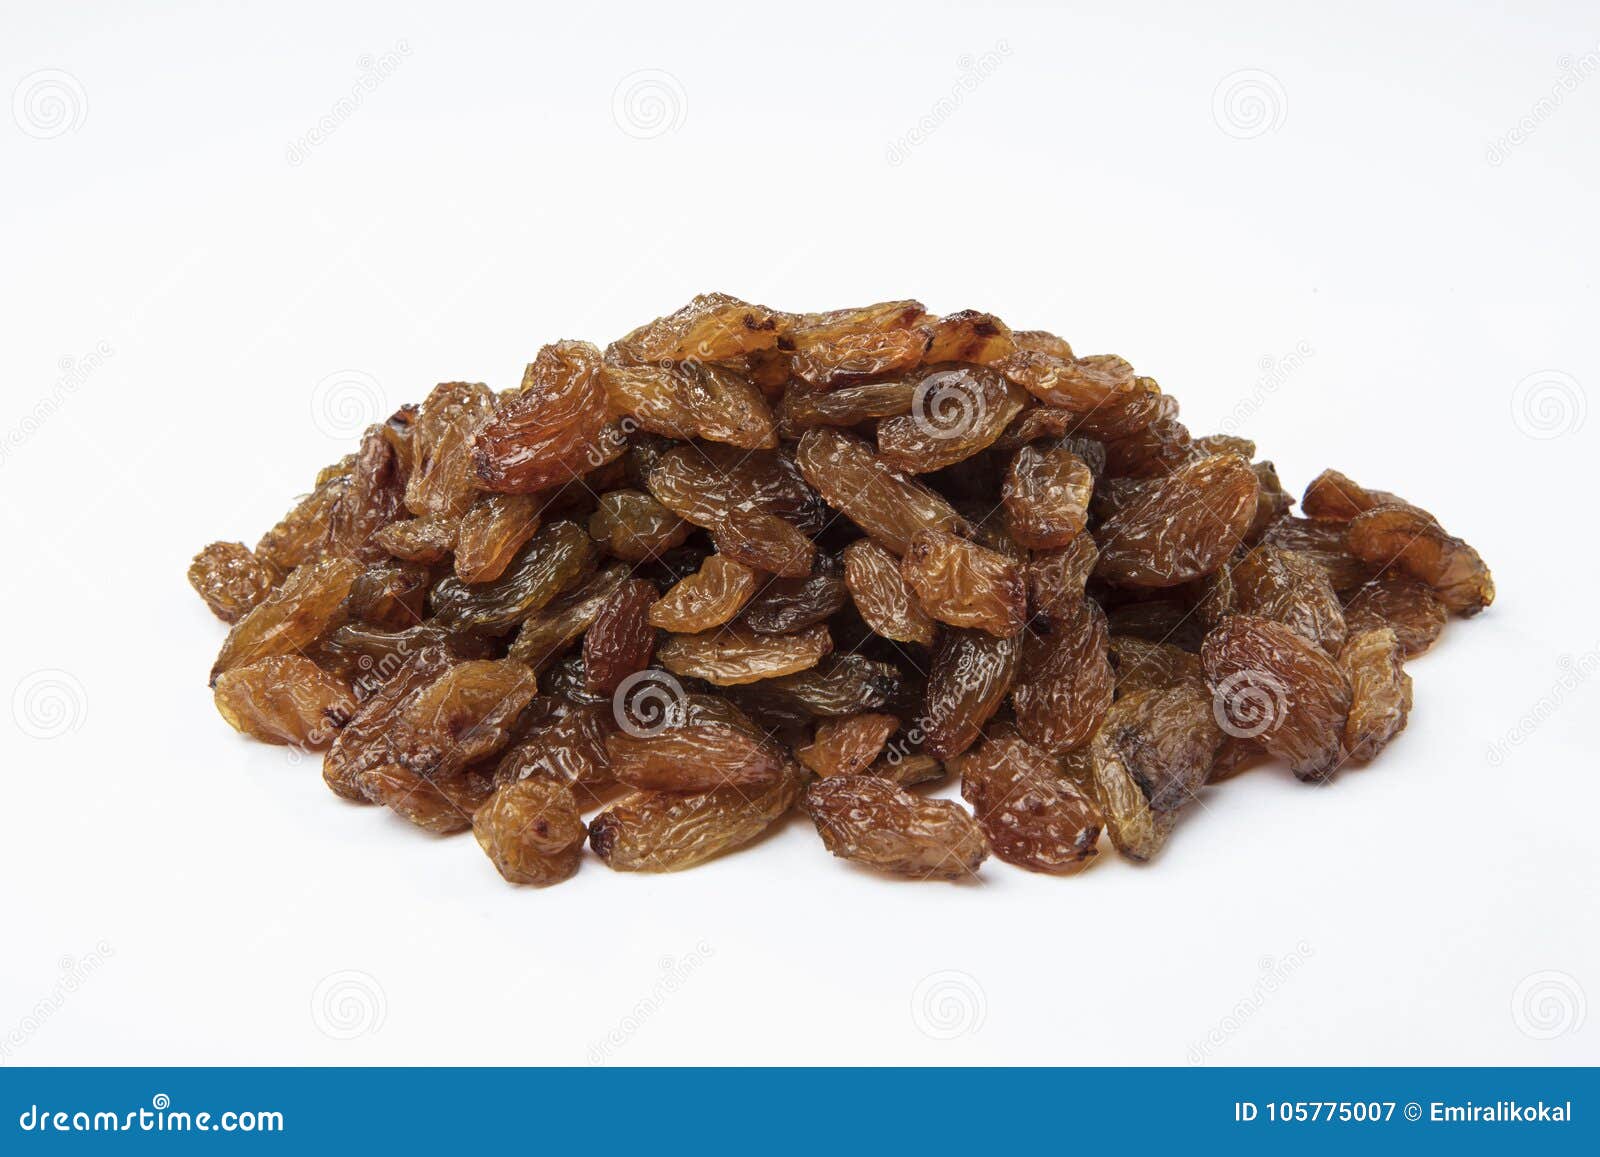 Heap of Raisins Isolated on White Background Stock Image - Image of ...